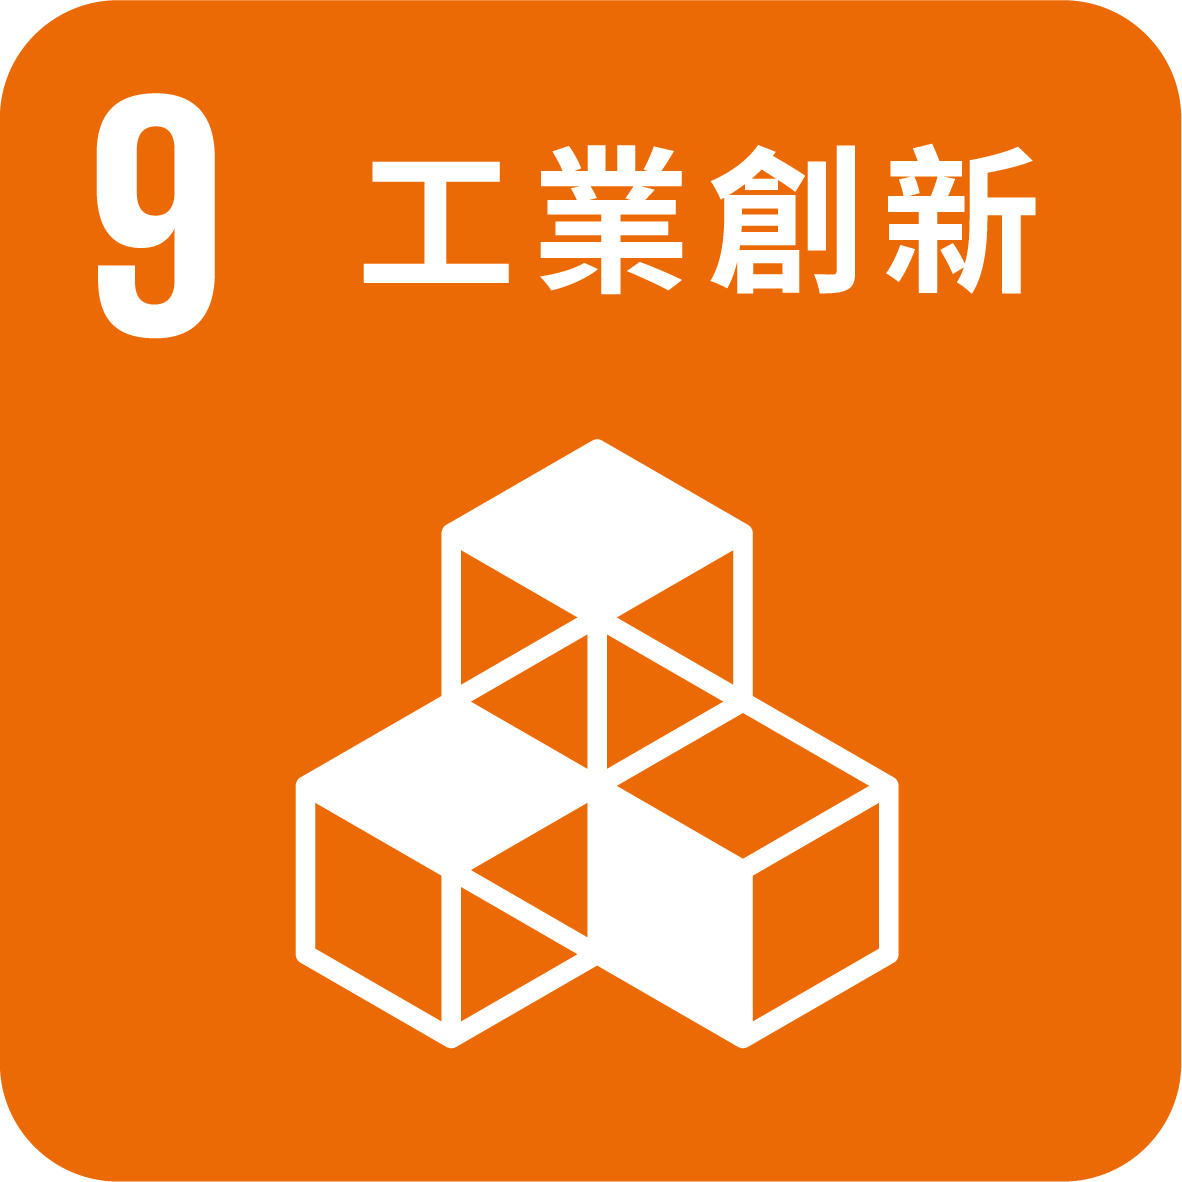 目標9_建設具防災能力的基礎設施 促進具包容性的永續工業化及推動創新